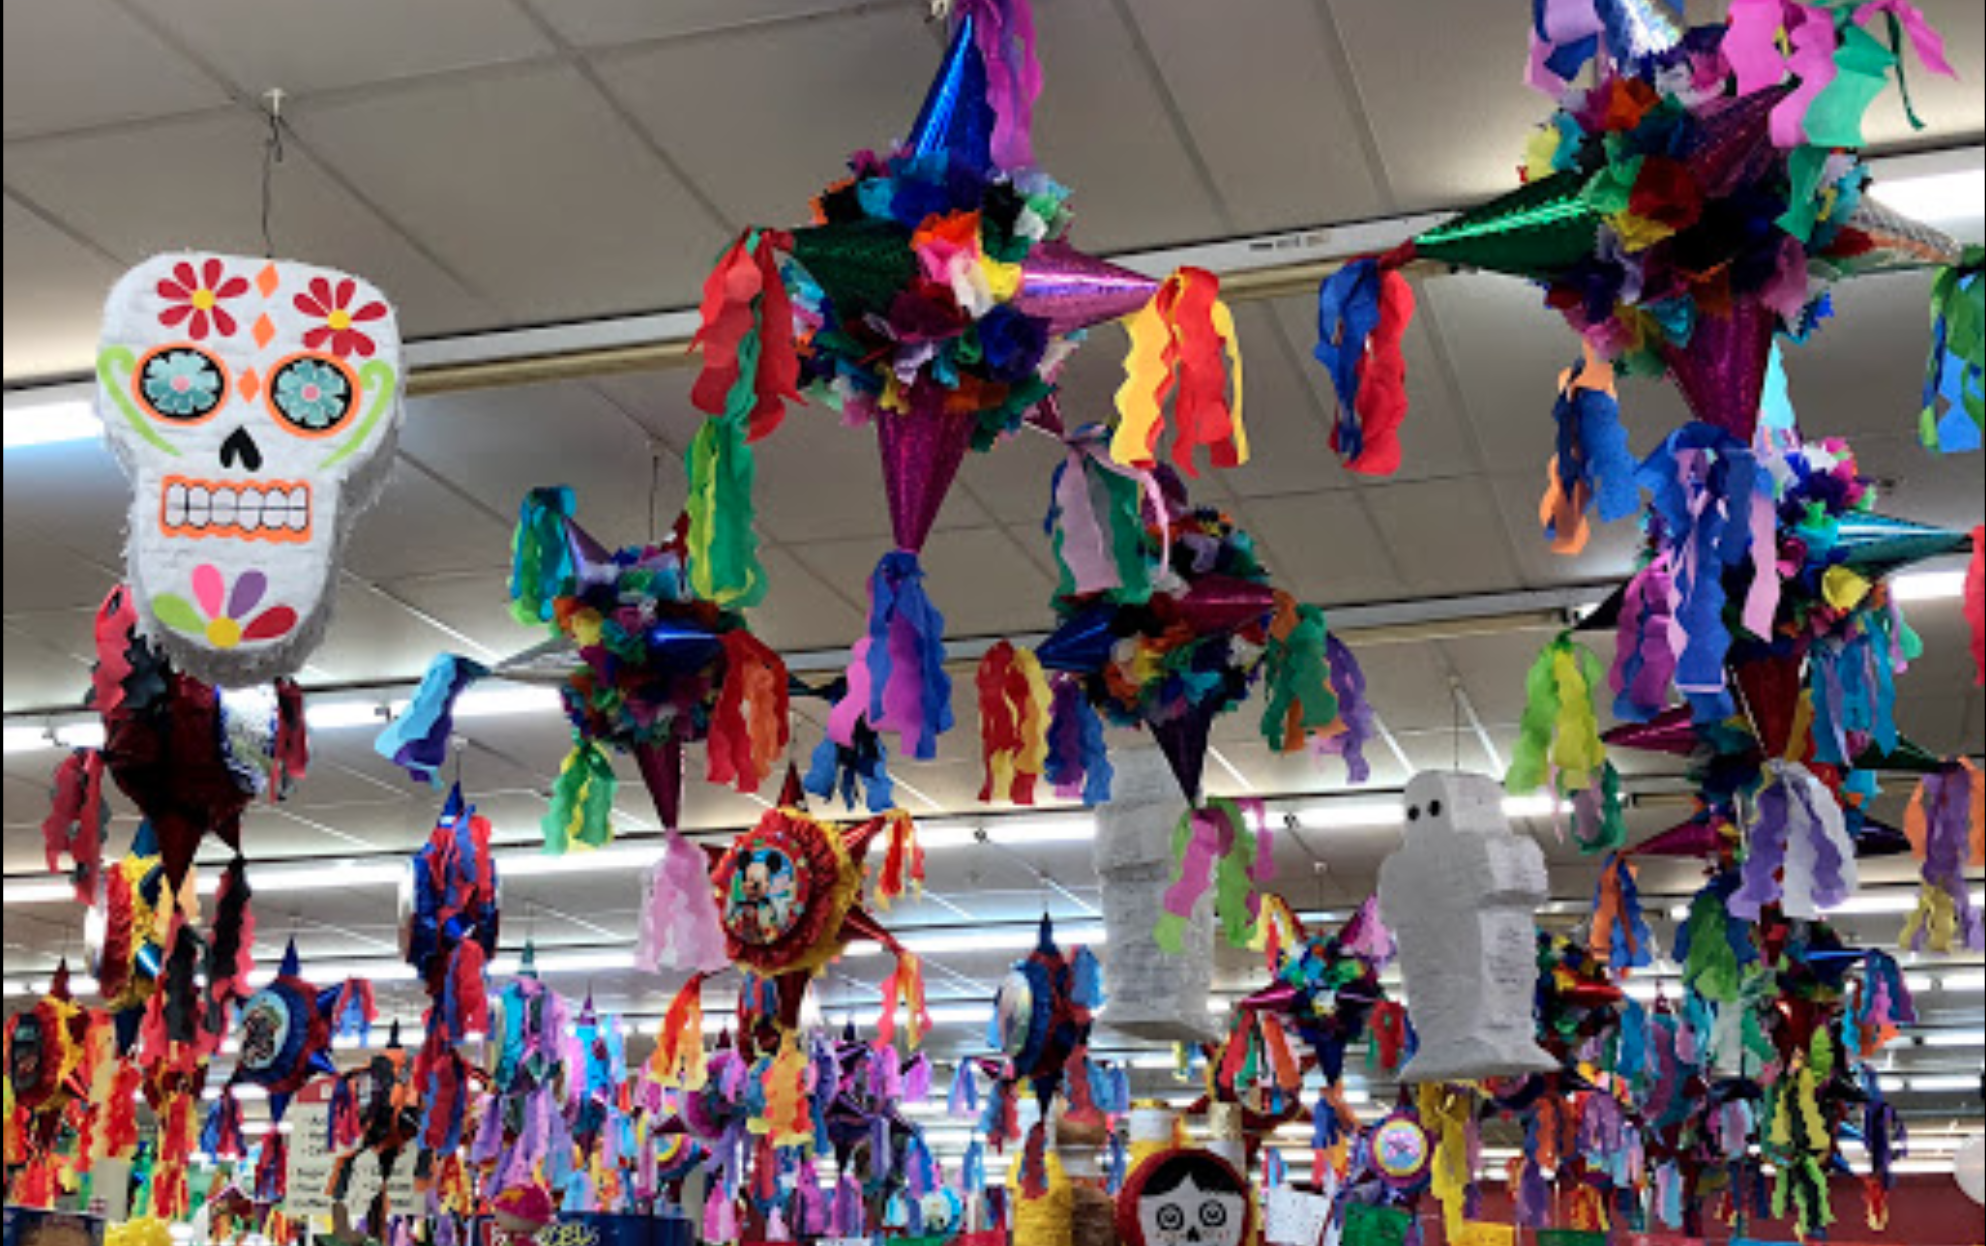 Need a politically themed Piñata?